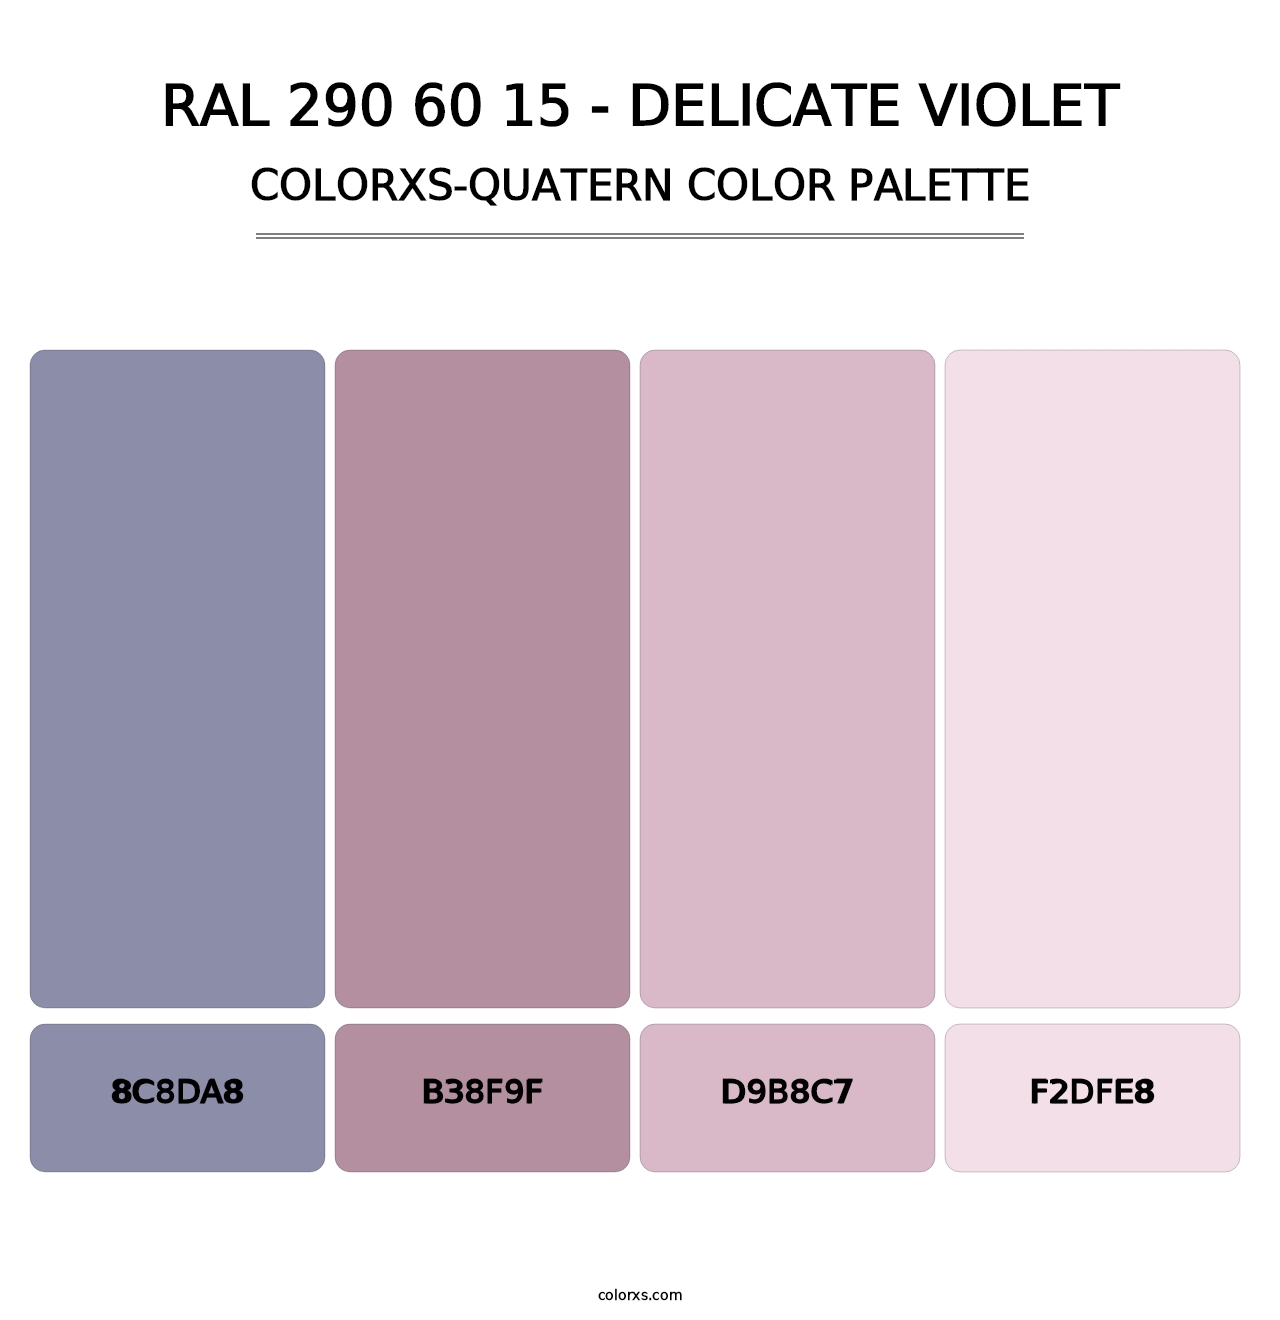 RAL 290 60 15 - Delicate Violet - Colorxs Quatern Palette